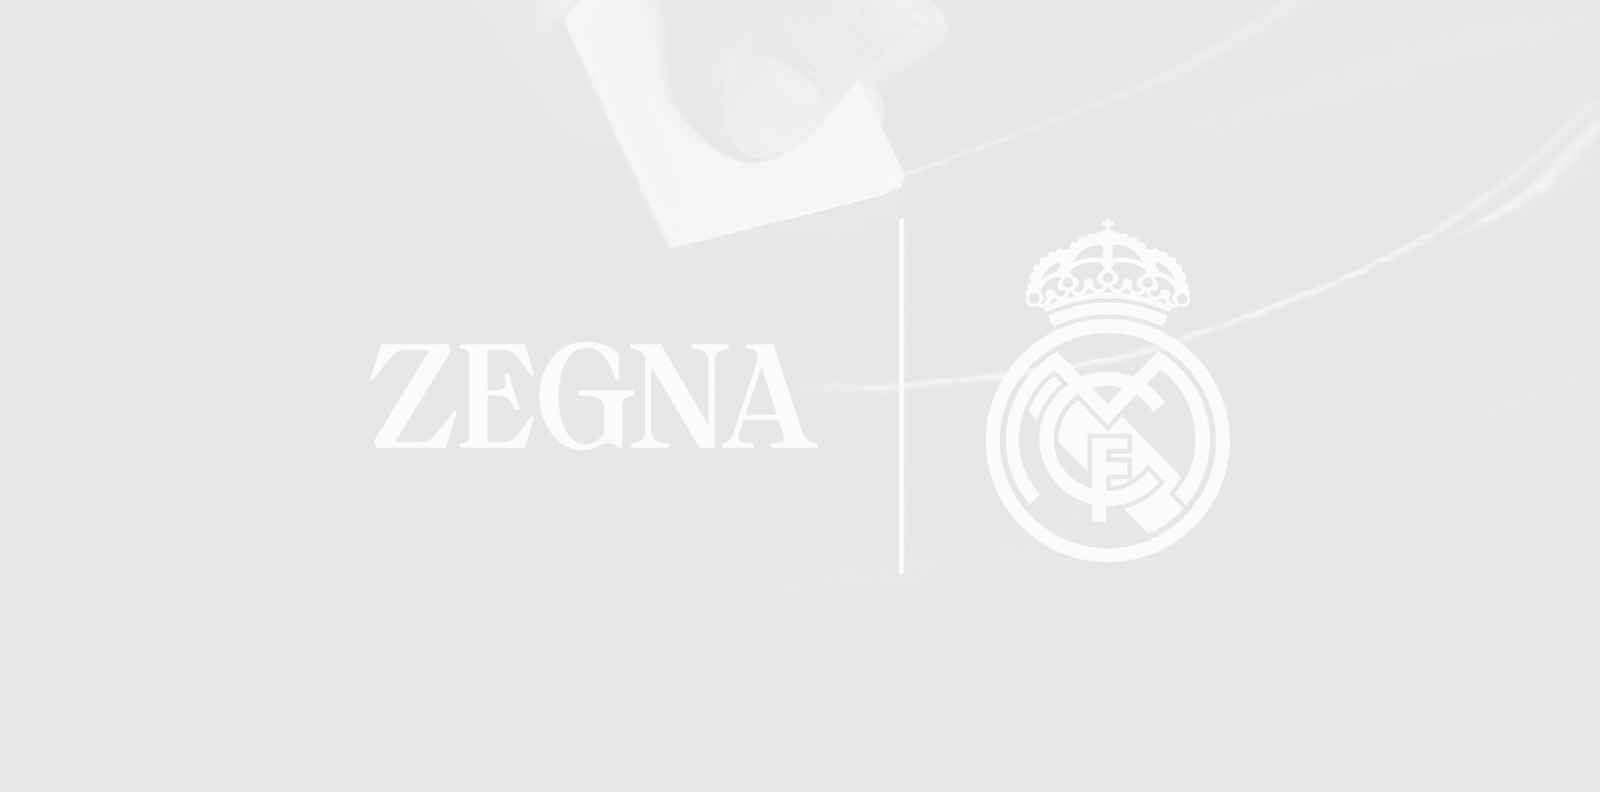 Zegna и Real Madrid обявиха специално партньорство